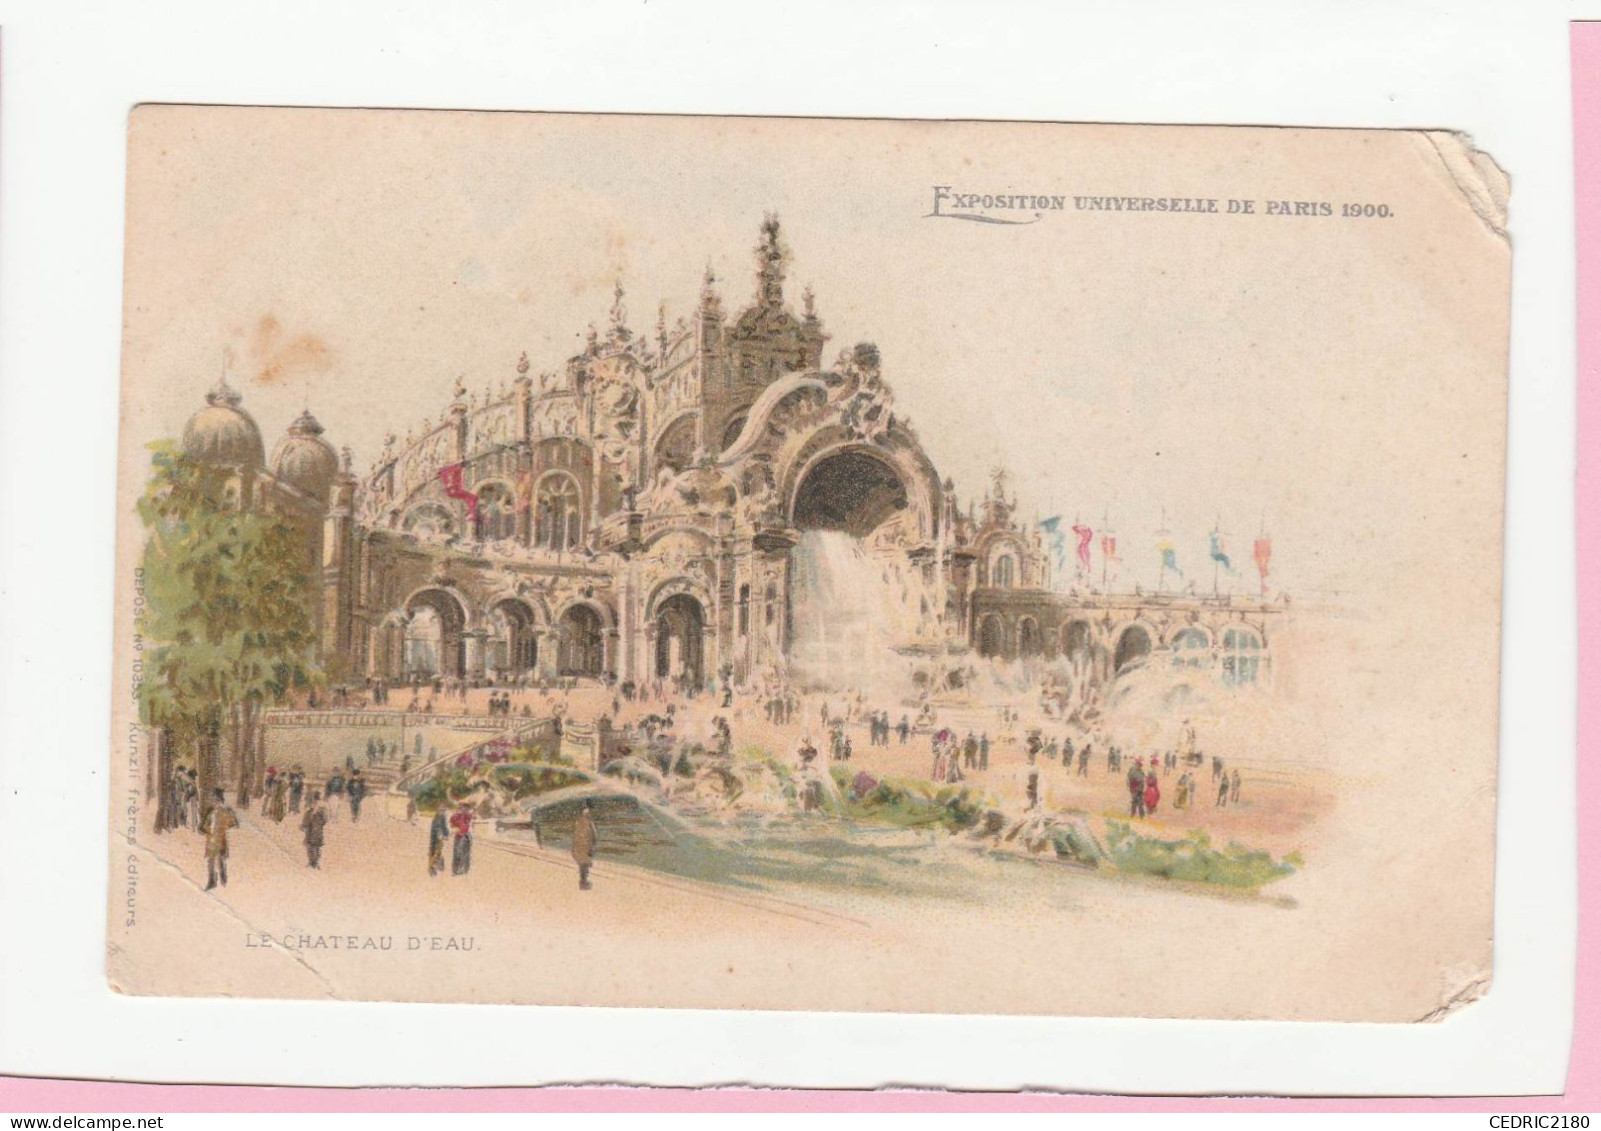 EXPOSITION UNIVERSELLE DE PARIS 1900 LE CHATEAU D'EAU - Expositions